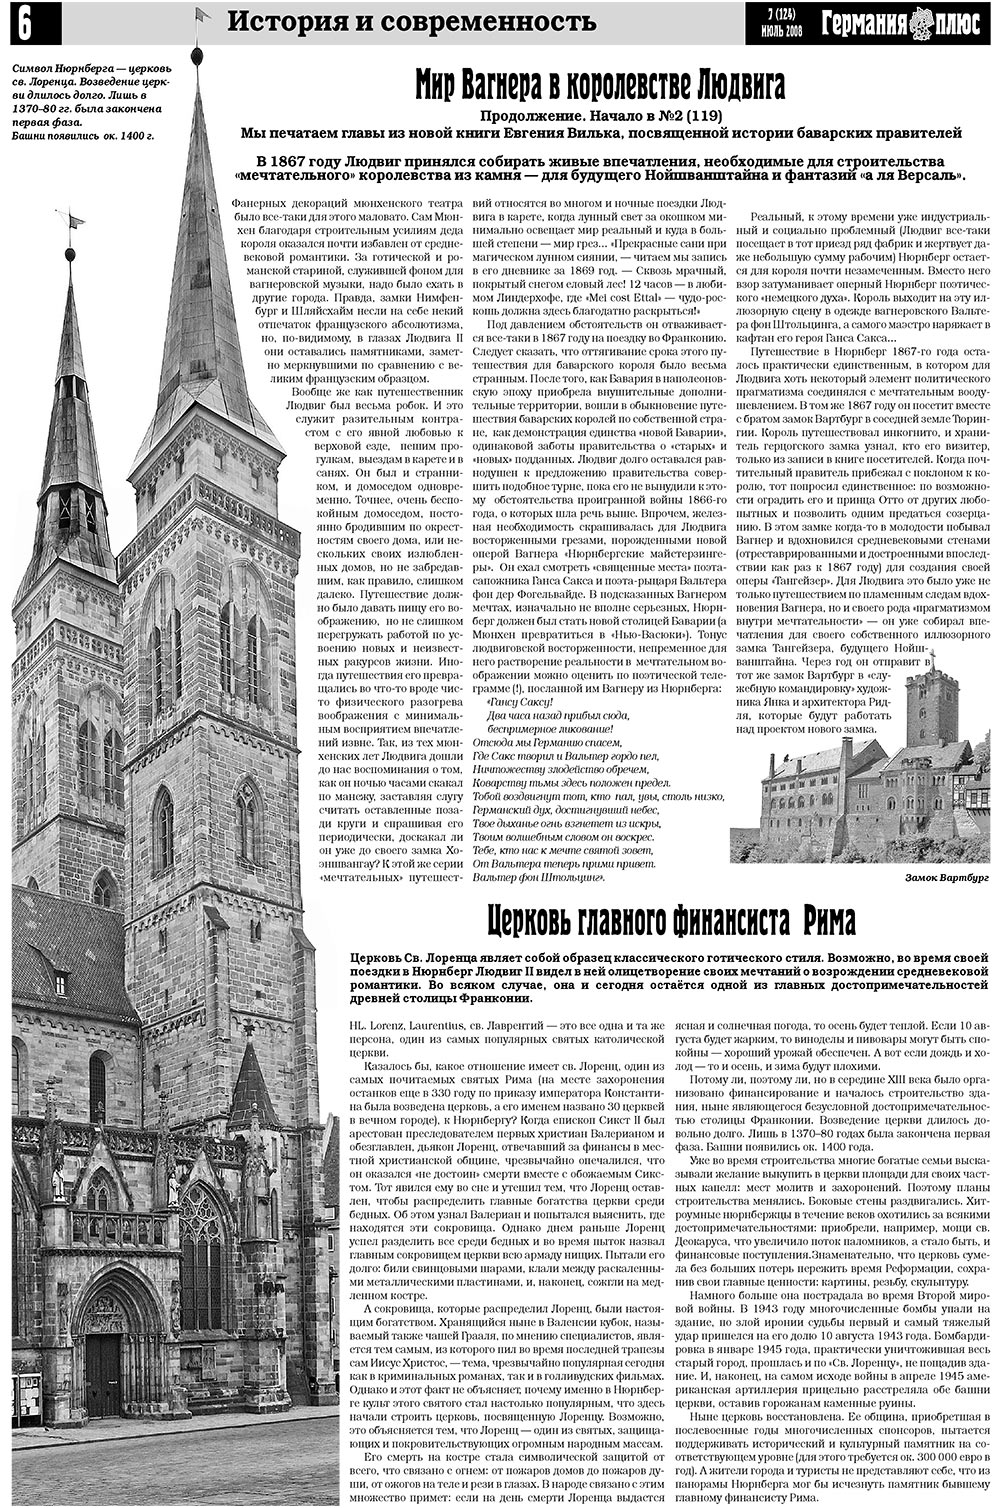 Германия плюс, газета. 2008 №7 стр.6